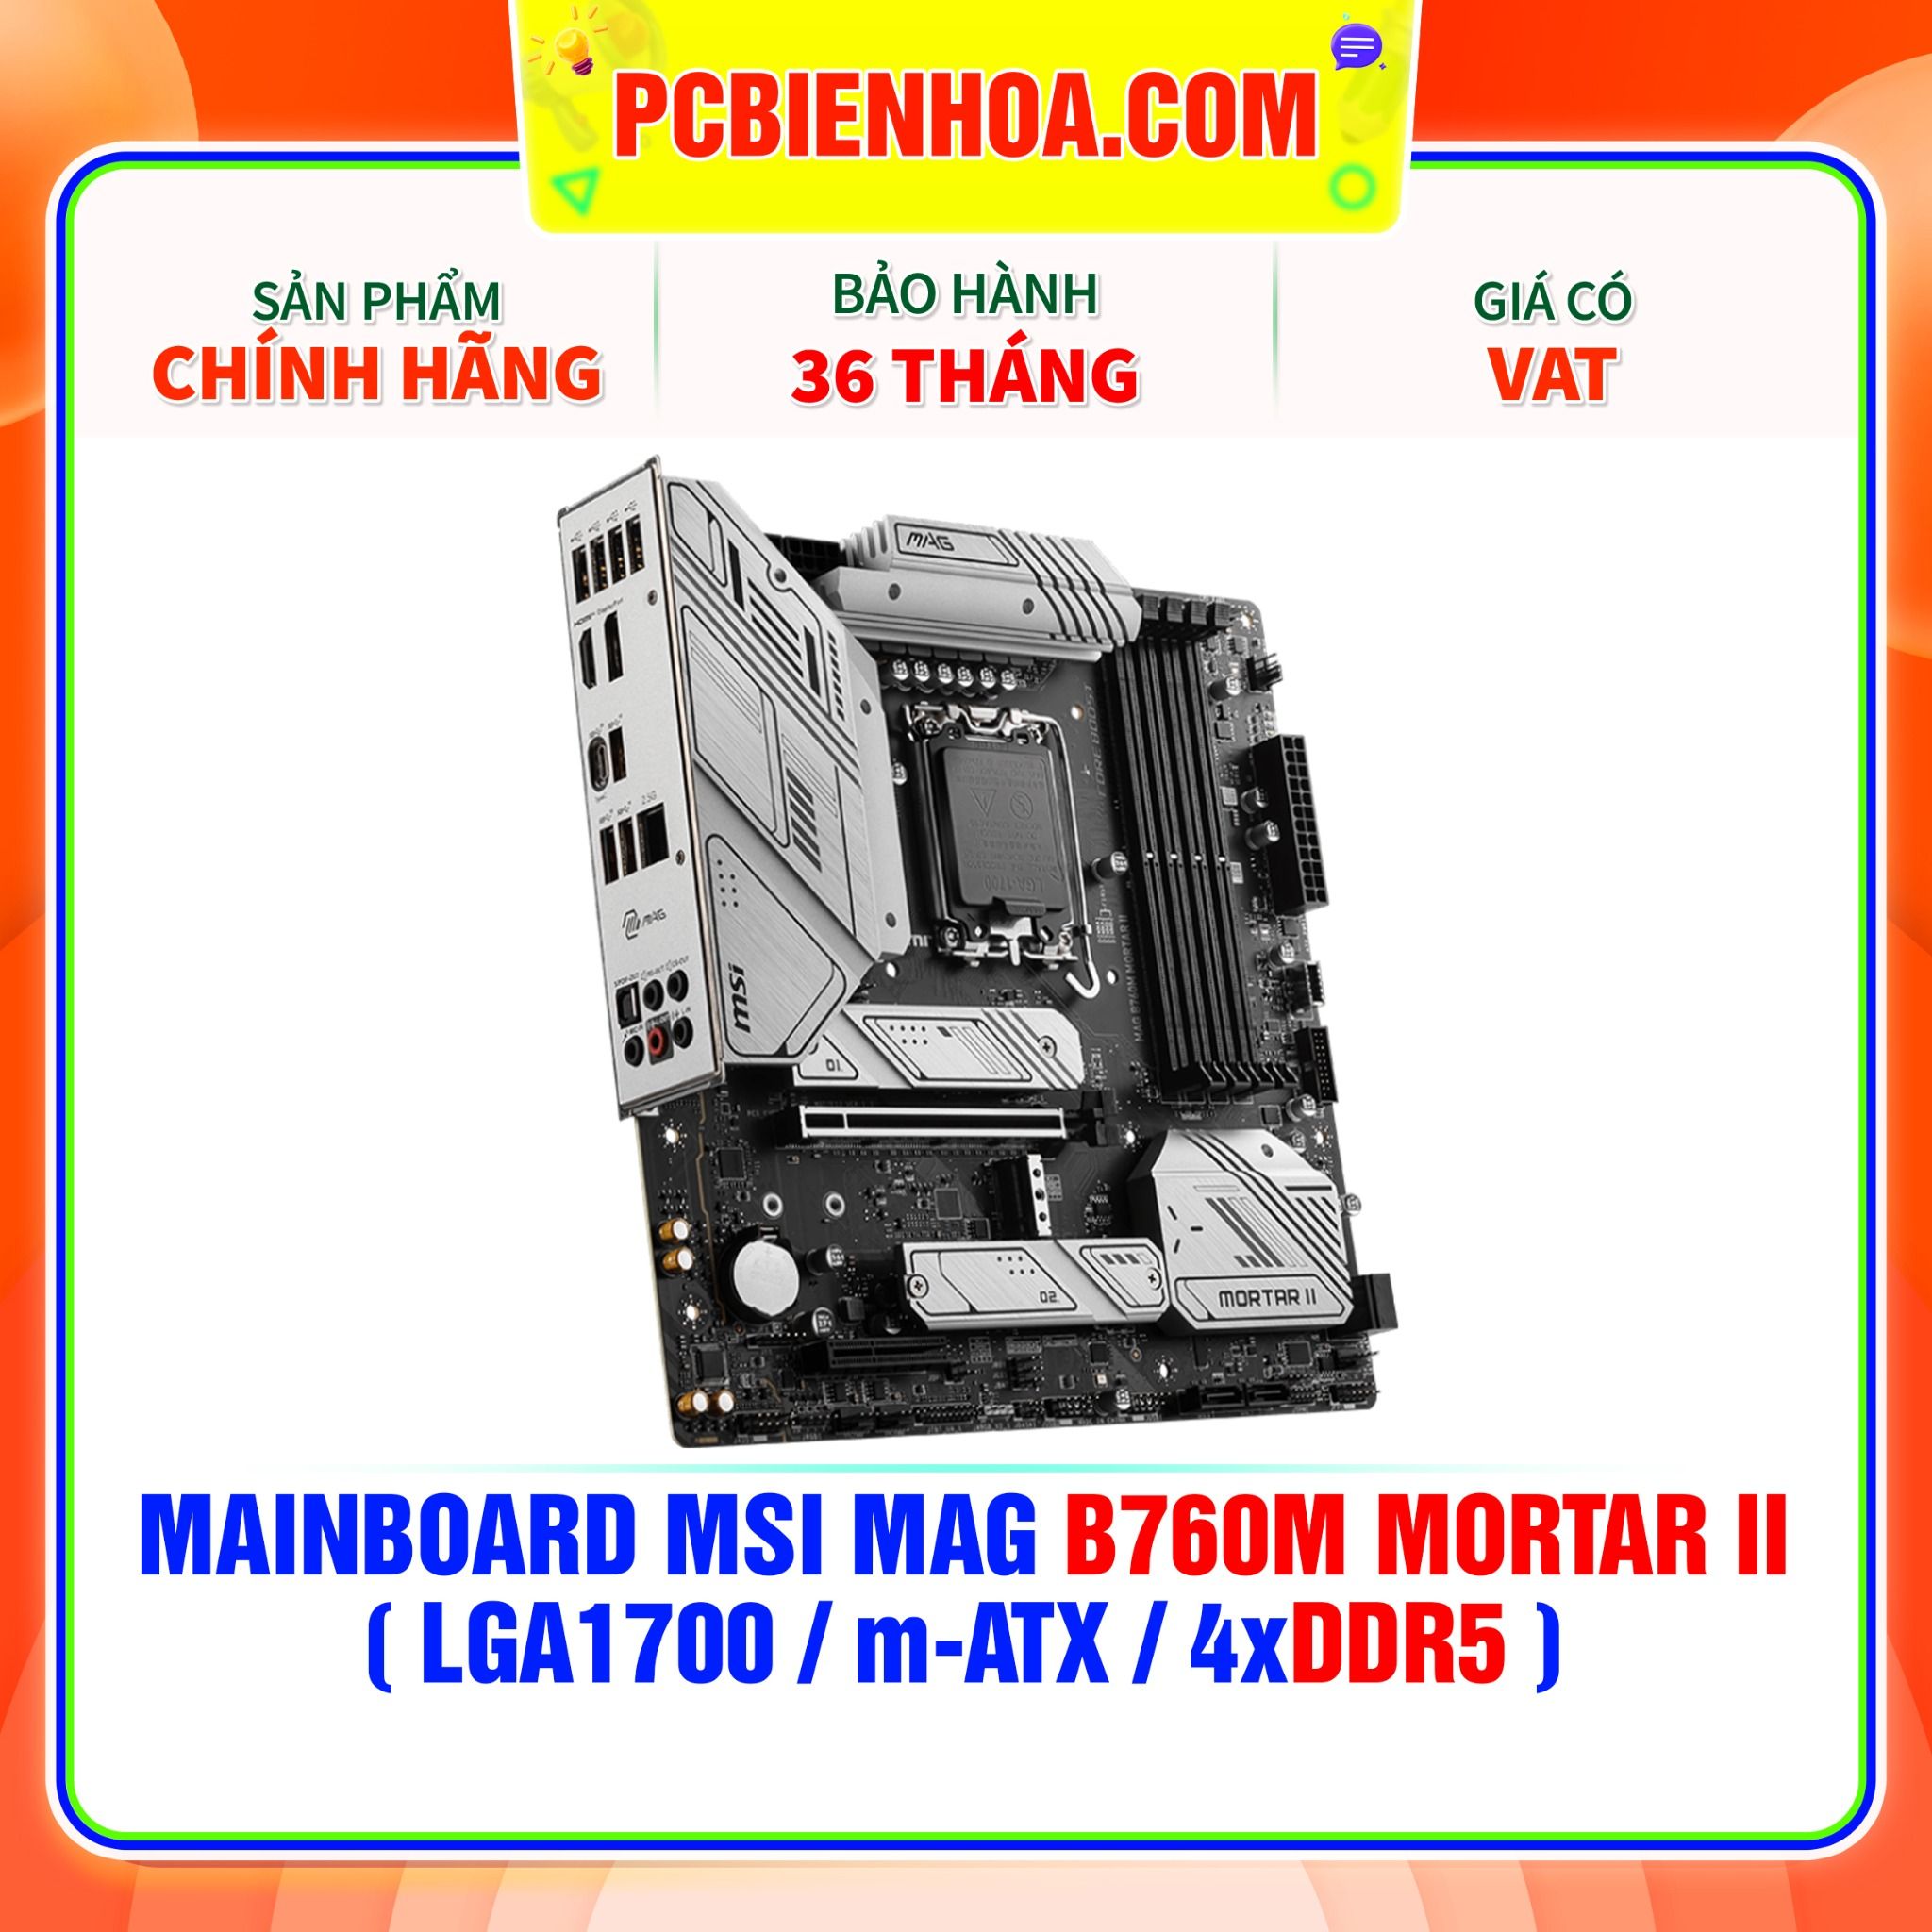  DDR5 - MAINBOARD MSI MAG B760M MORTAR II ( LGA1700 / m-ATX / 4xDDR5 ) 